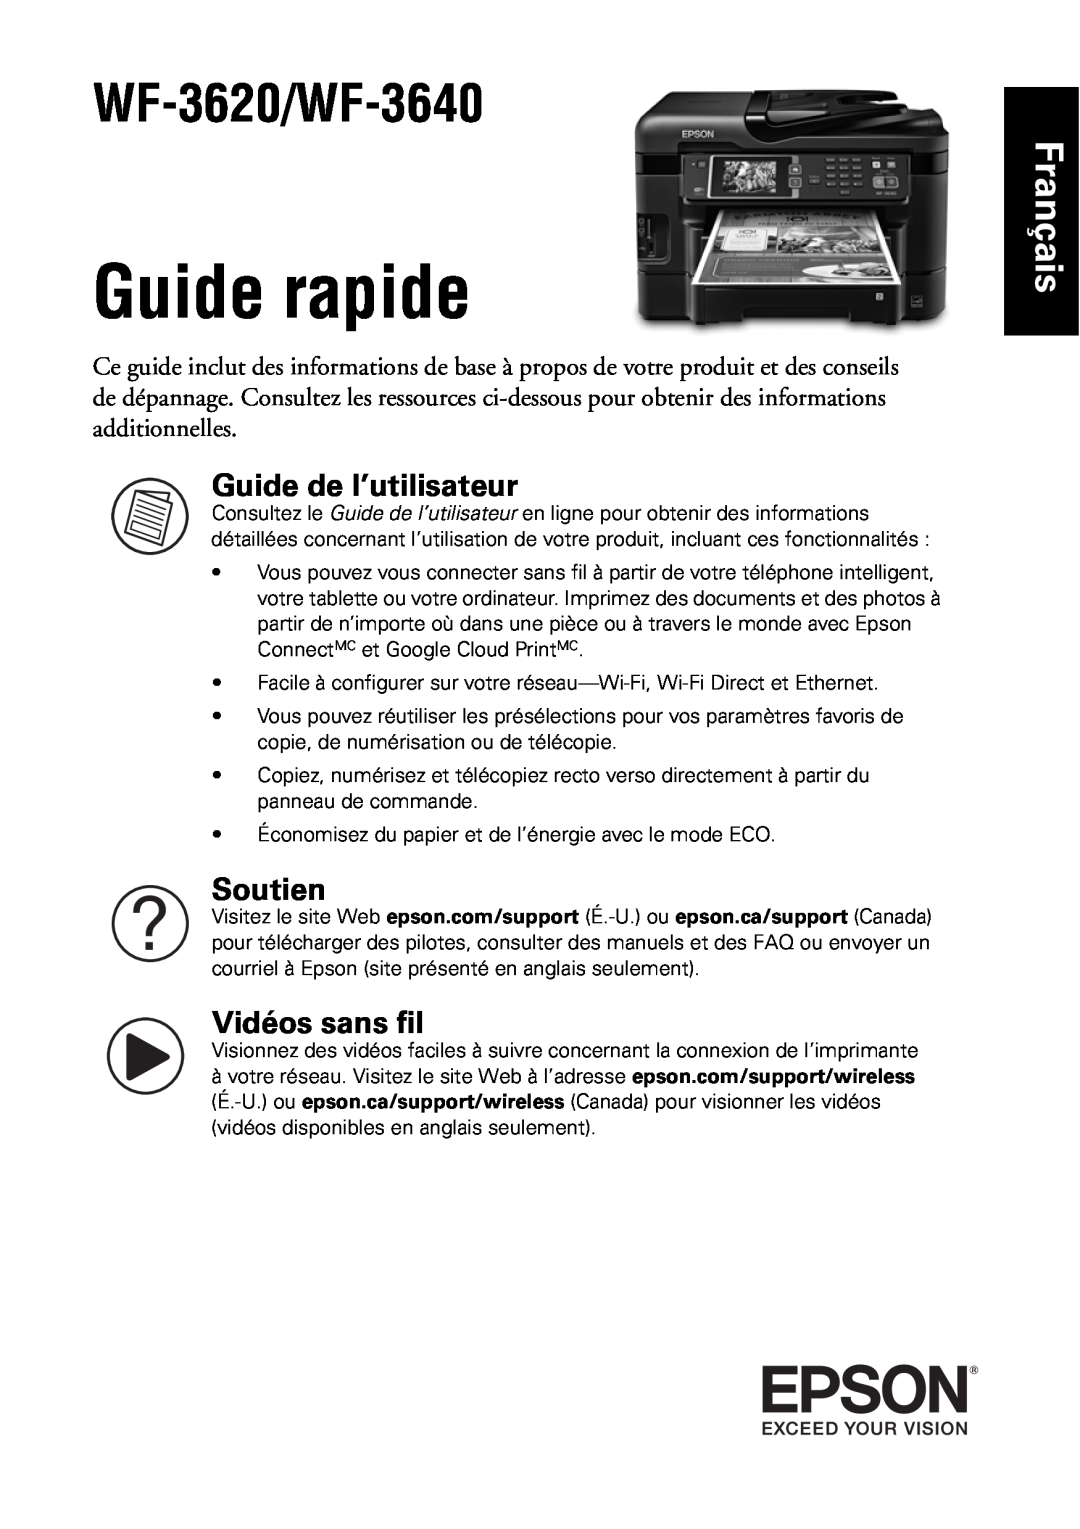 Epson manual Guide rapide, Français, Guide de l’utilisateur, Soutien, Vidéos sans fil, WF-3620/WF-3640 